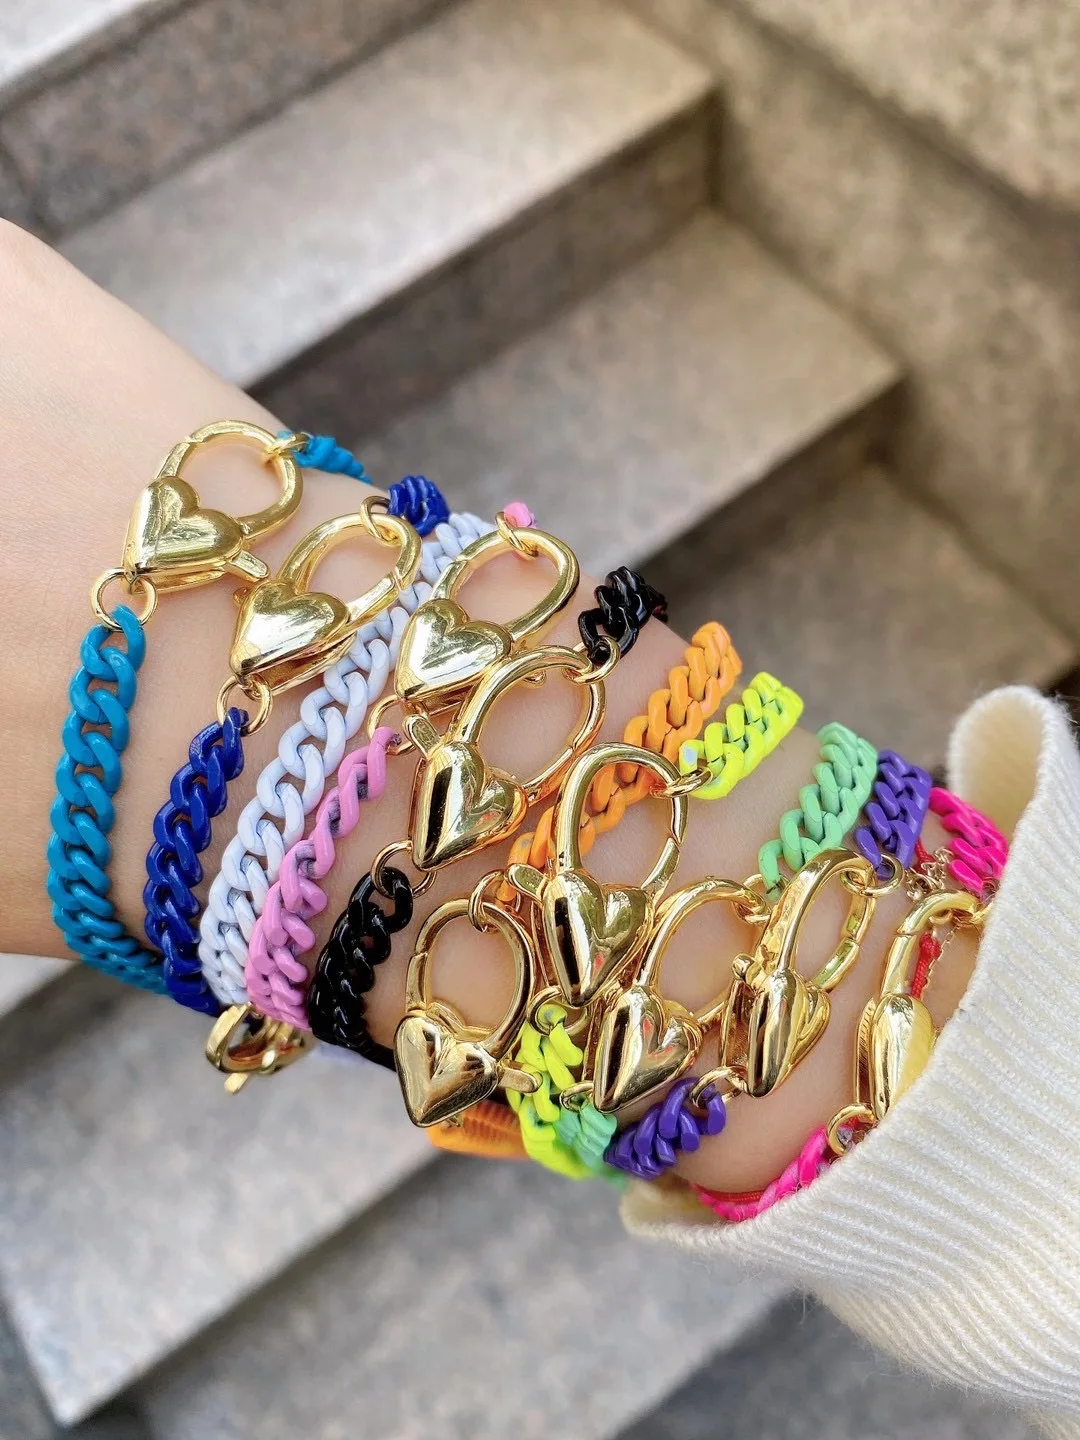 

5Pcs Mix Color Enamel Link Chain Bracelet Gold Color Lobster Clasp Chain Jewelry 6MM Width, Choose Color